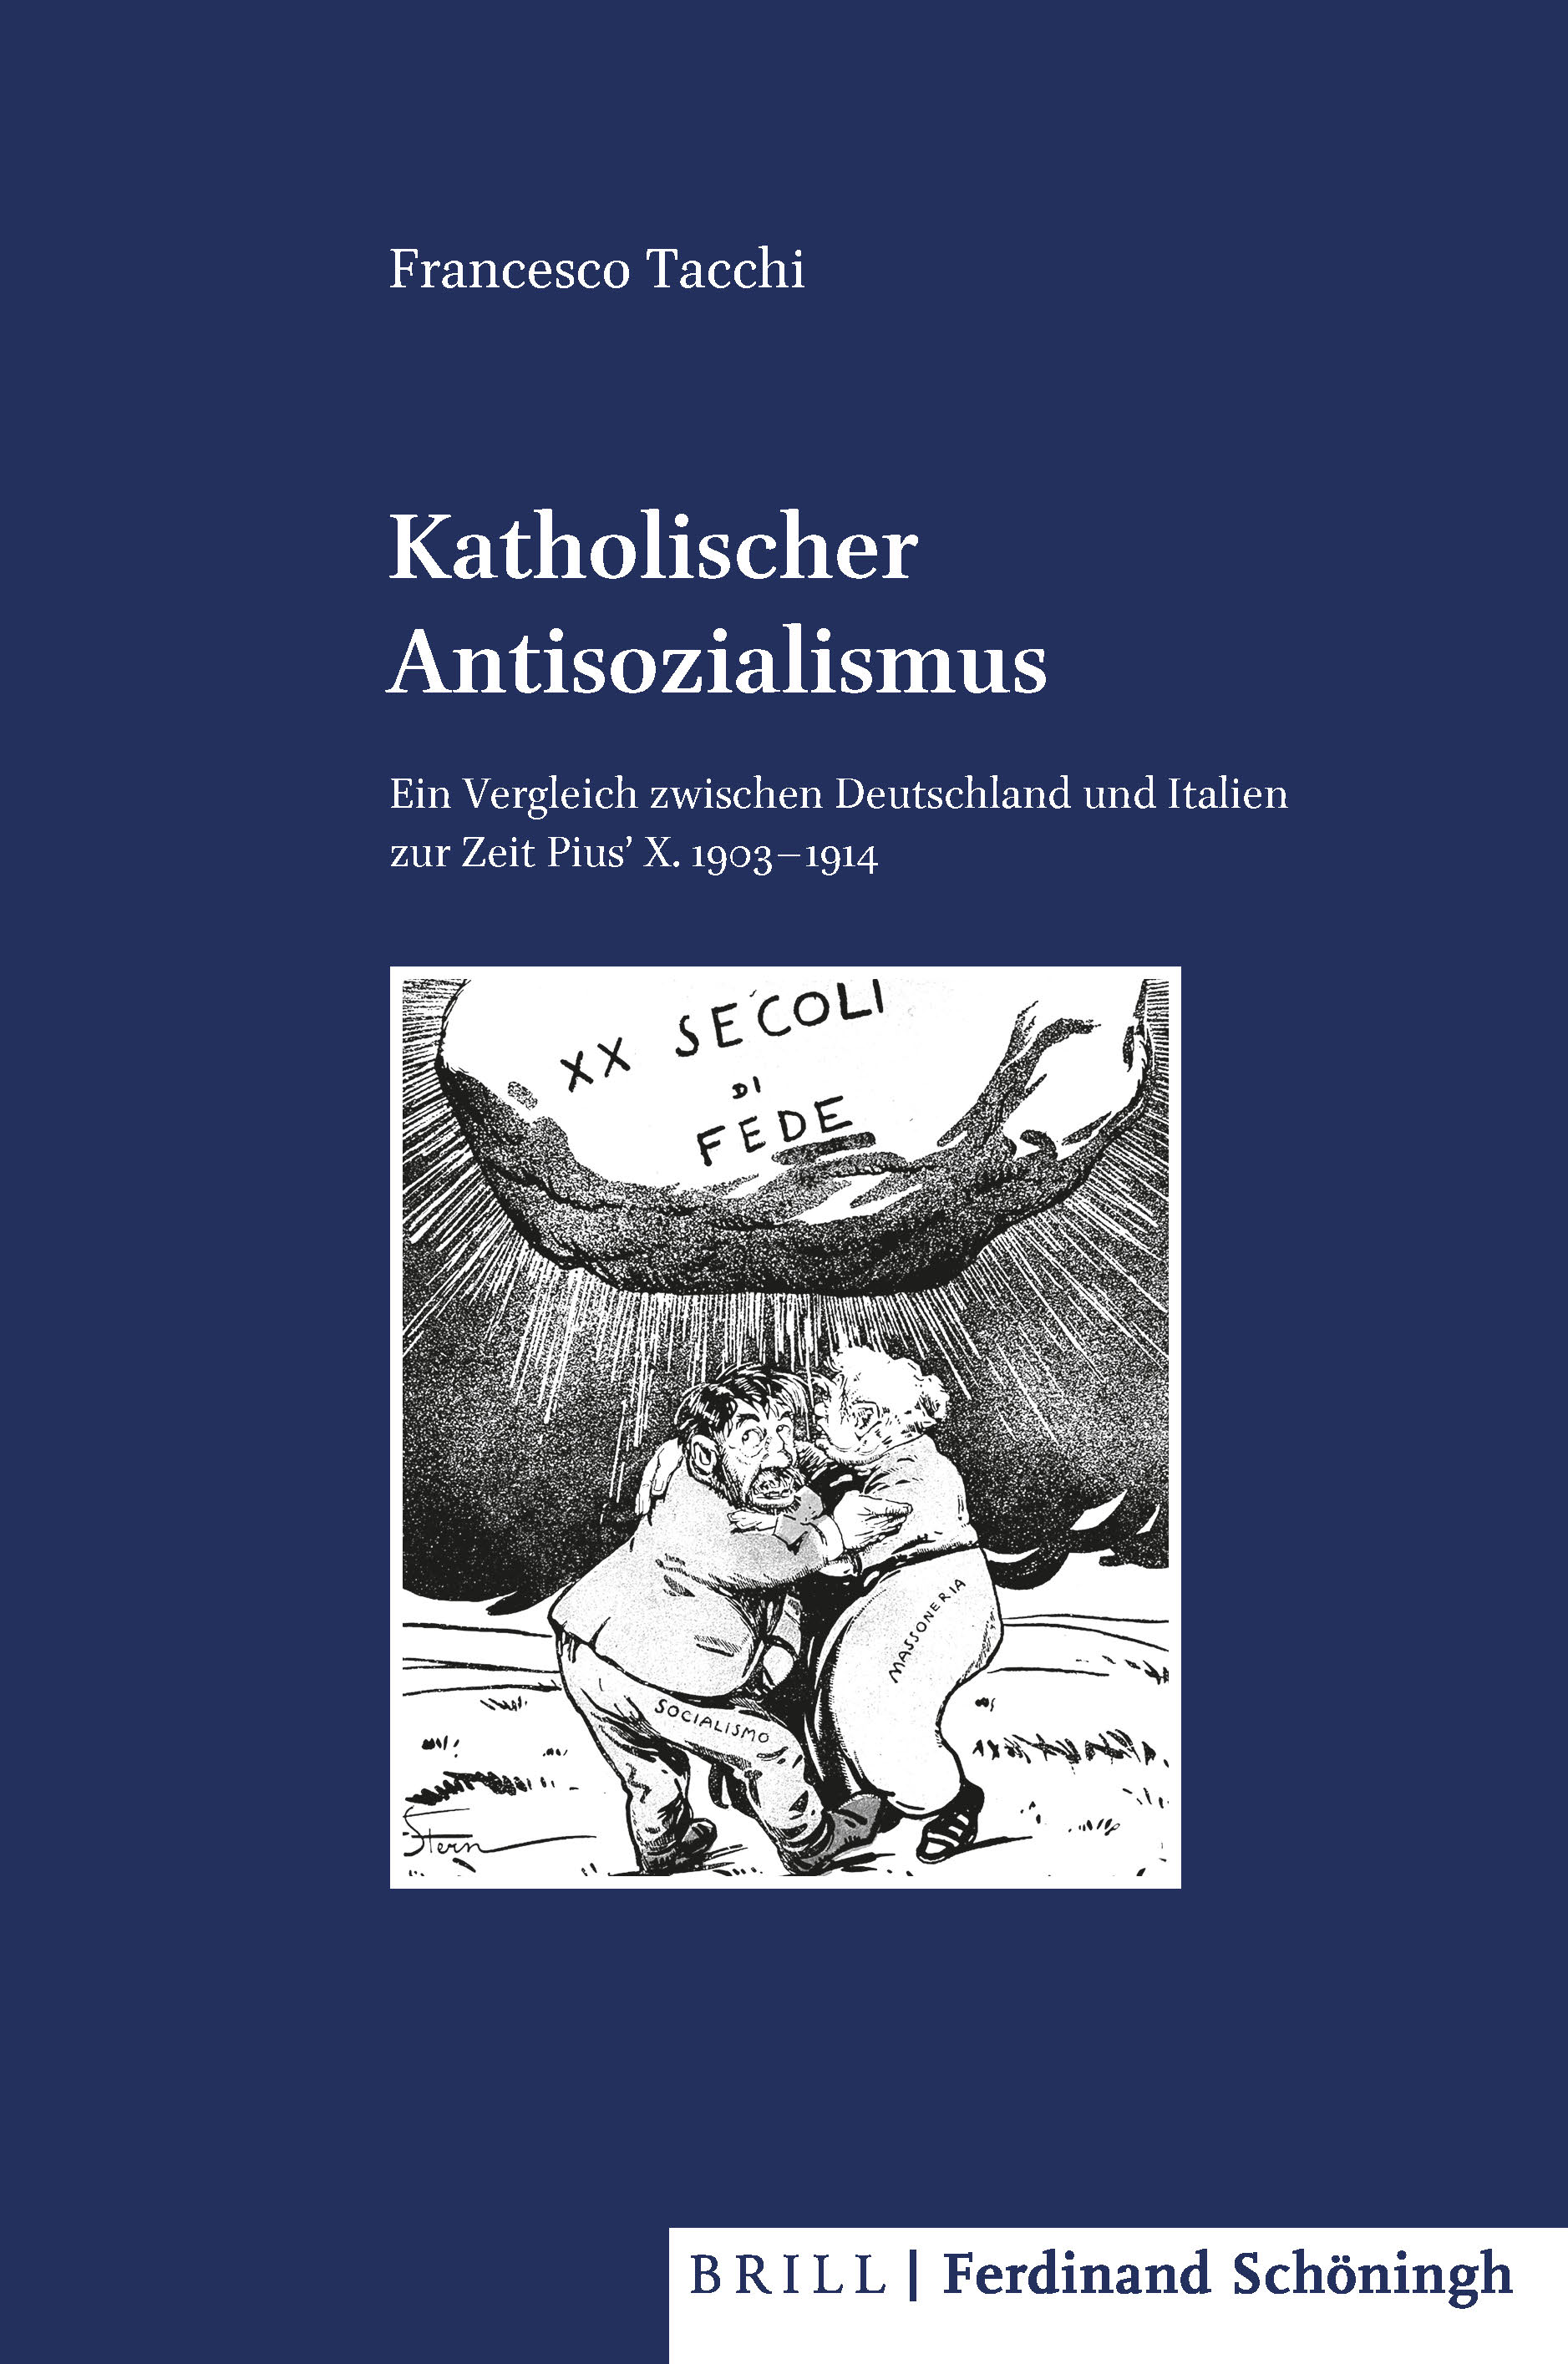 Francesco Tacchi: Katholischer Antisozialismus. Ein Vergleich zwischen Deutschland und Italien zur Zeit Pius' X. 1903–1914.